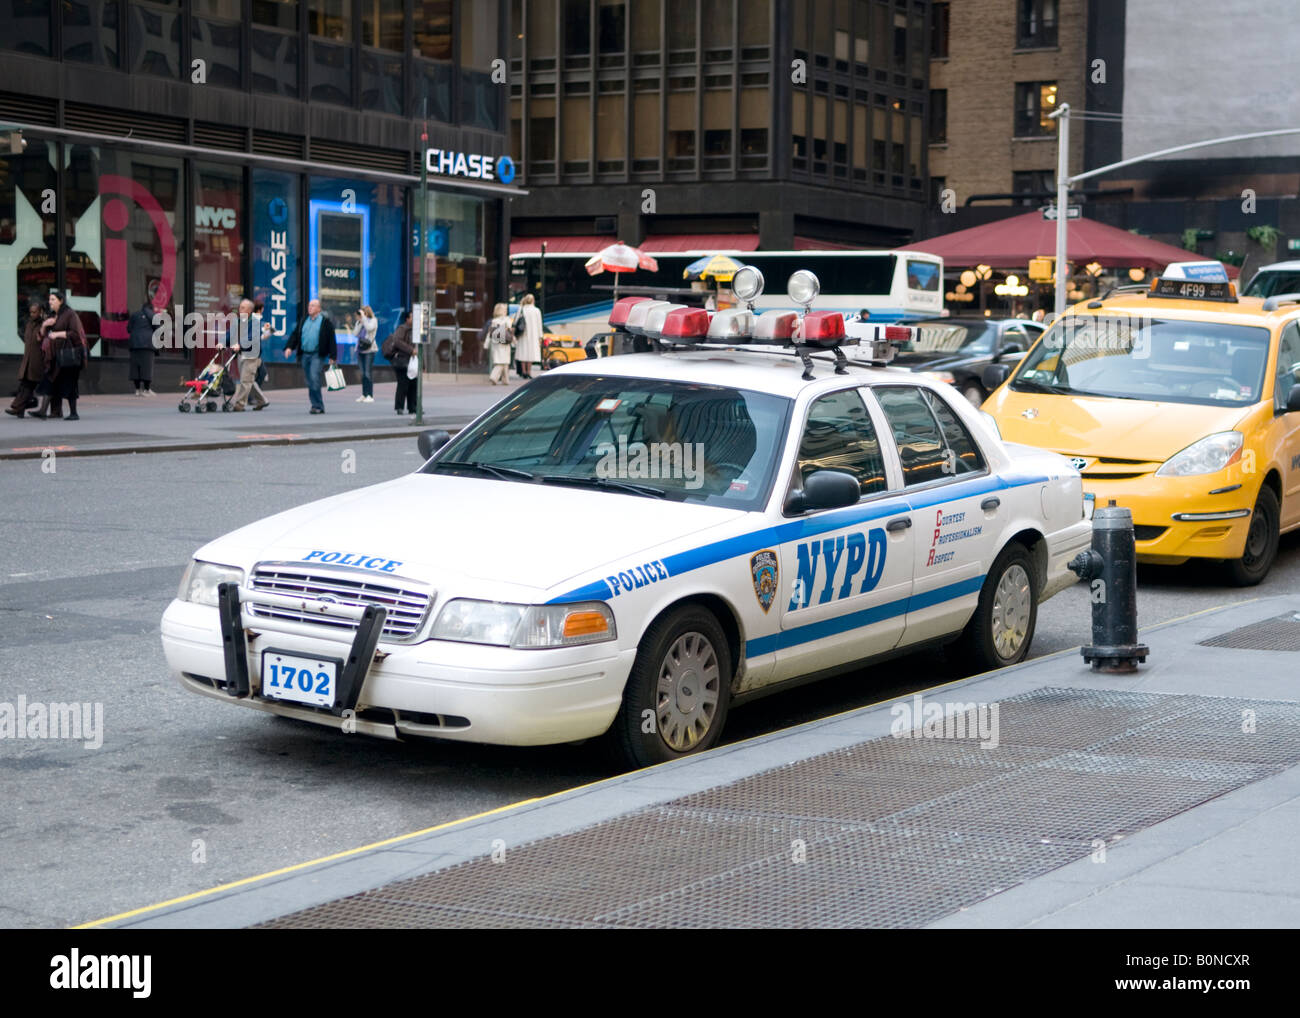 New York Police voiture garée au poteau incendie Banque D'Images